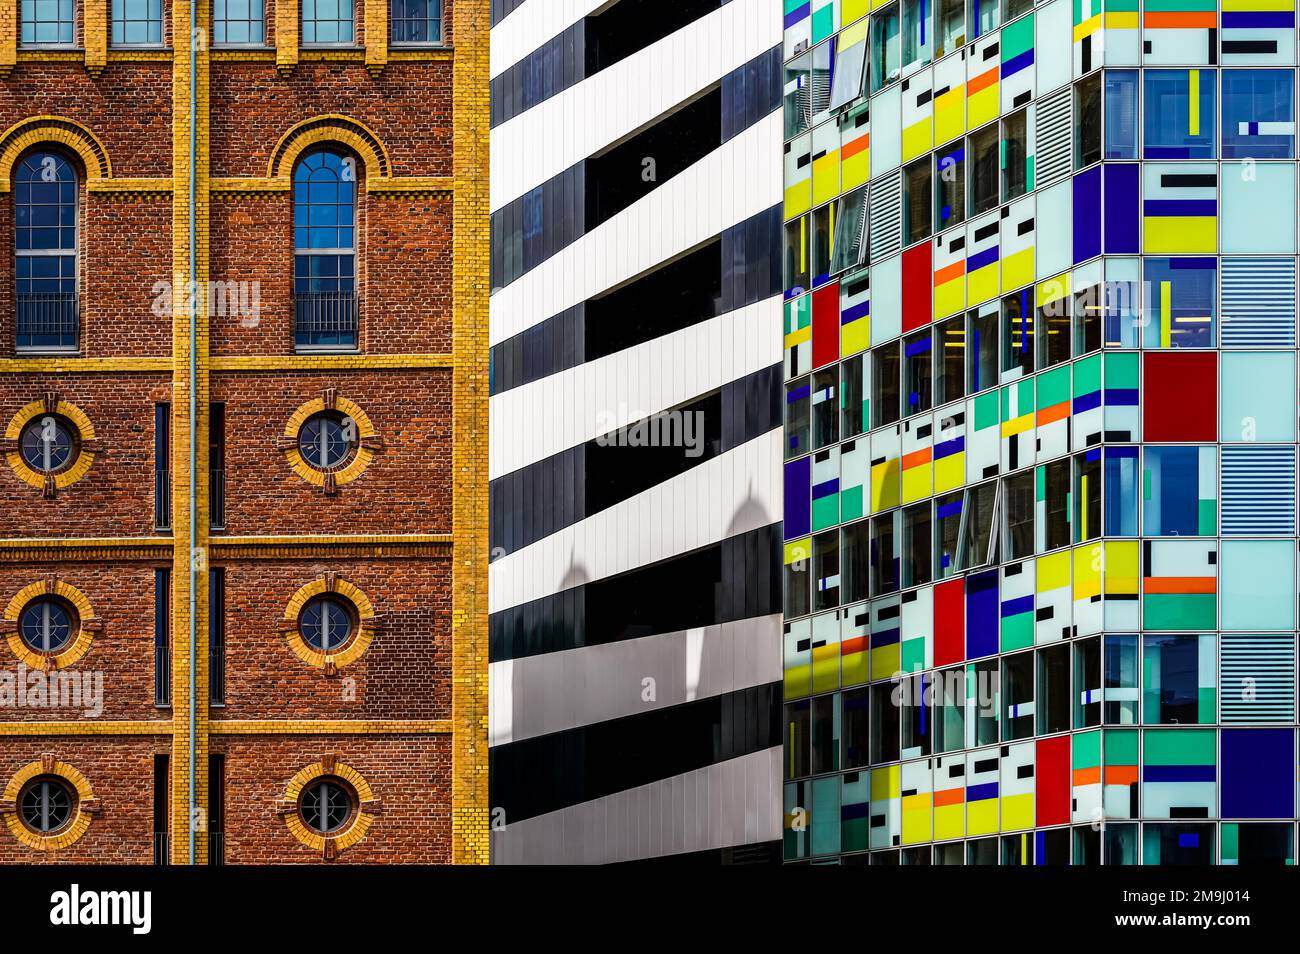 Architektur im Media Harbor Düsseldorf. Blick auf die Fassaden zweier Gebäude. Auf der rechten Seite befindet sich die farbenfrohe Fassade des 16-stöckigen HOTELS. Stockfoto